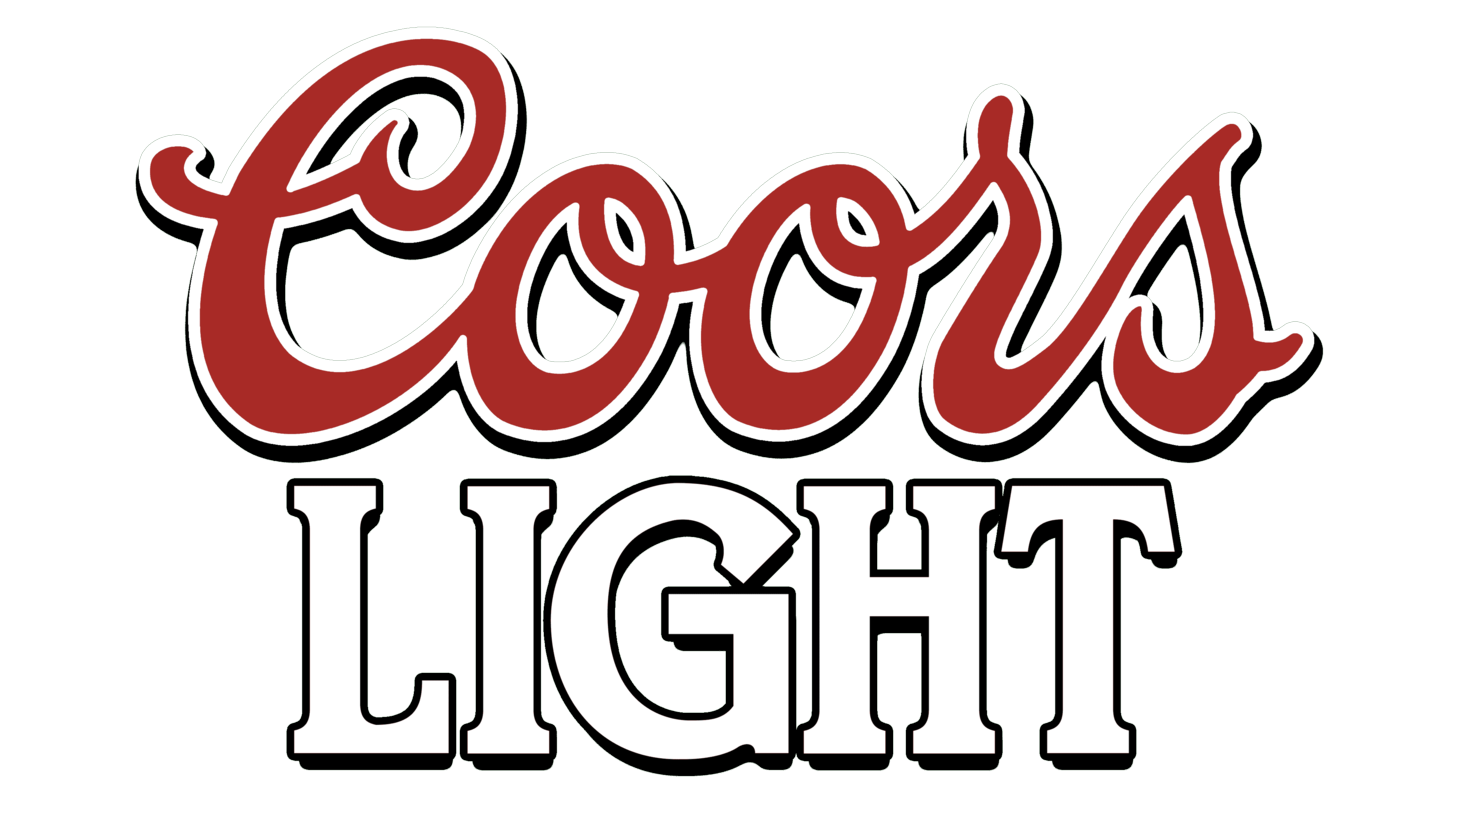 Coors light sign 1994 1999